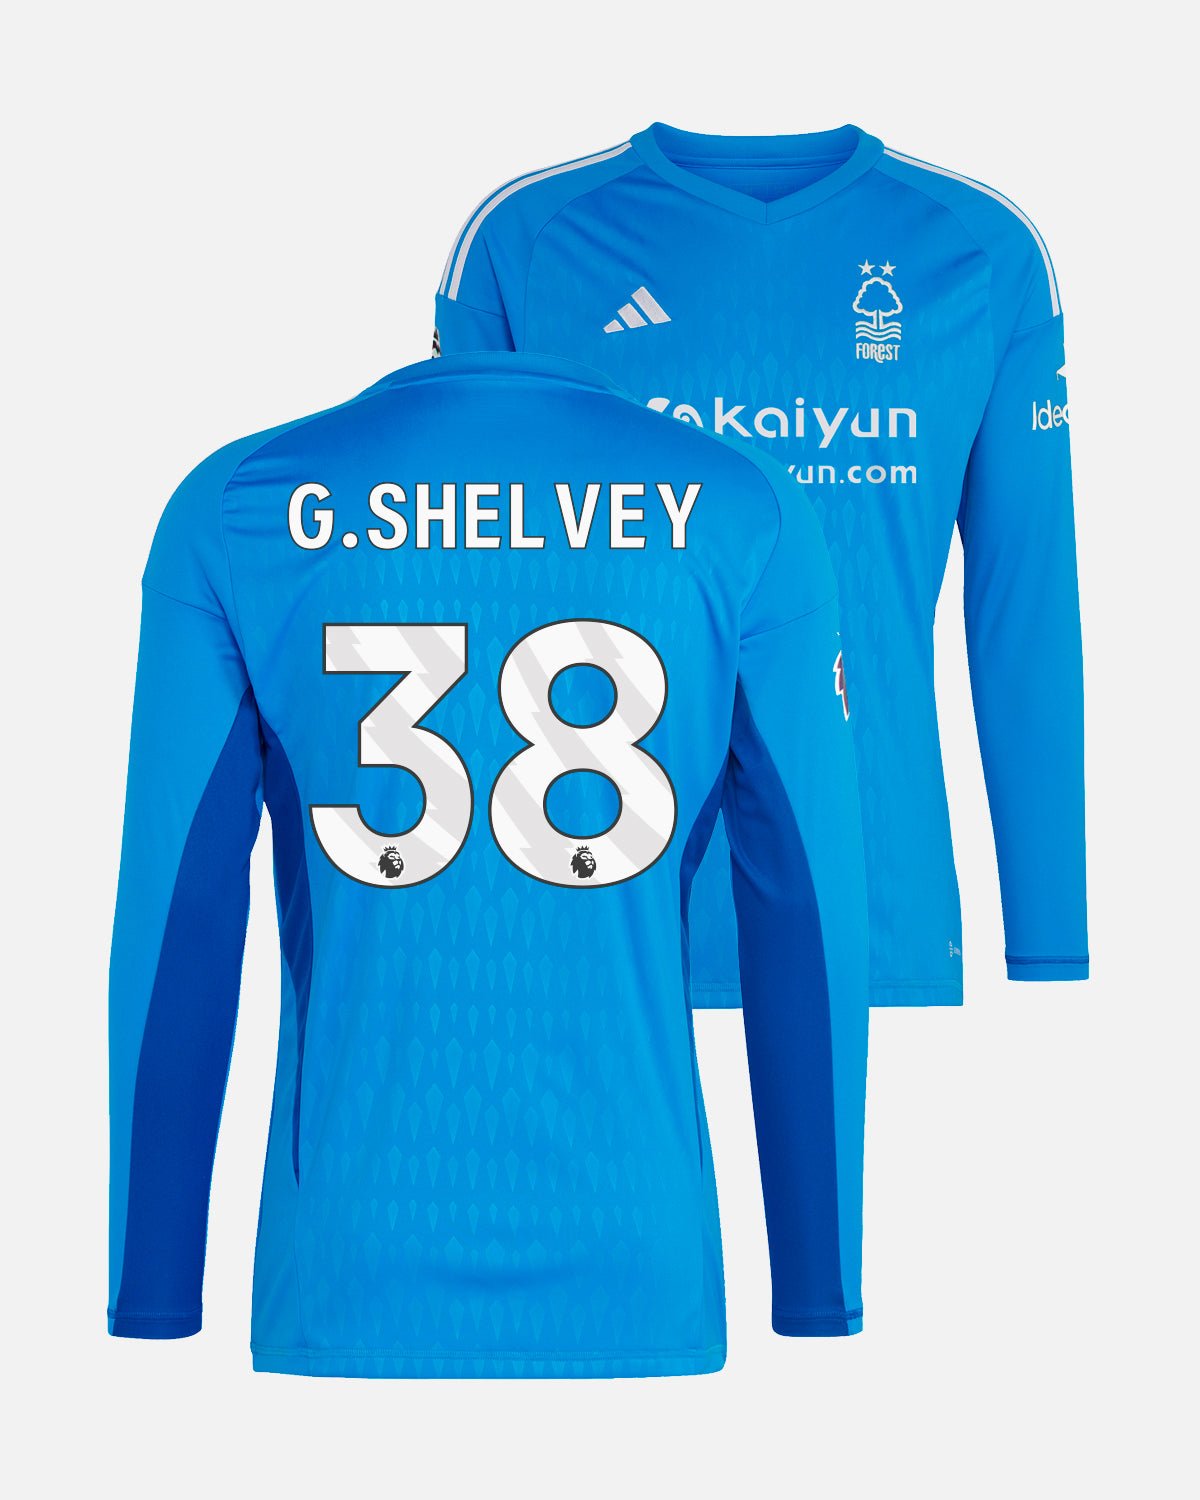 NFFC Blue Goalkeeper Shirt 23-24 - G. Shelvey 38 - Nottingham Forest FC